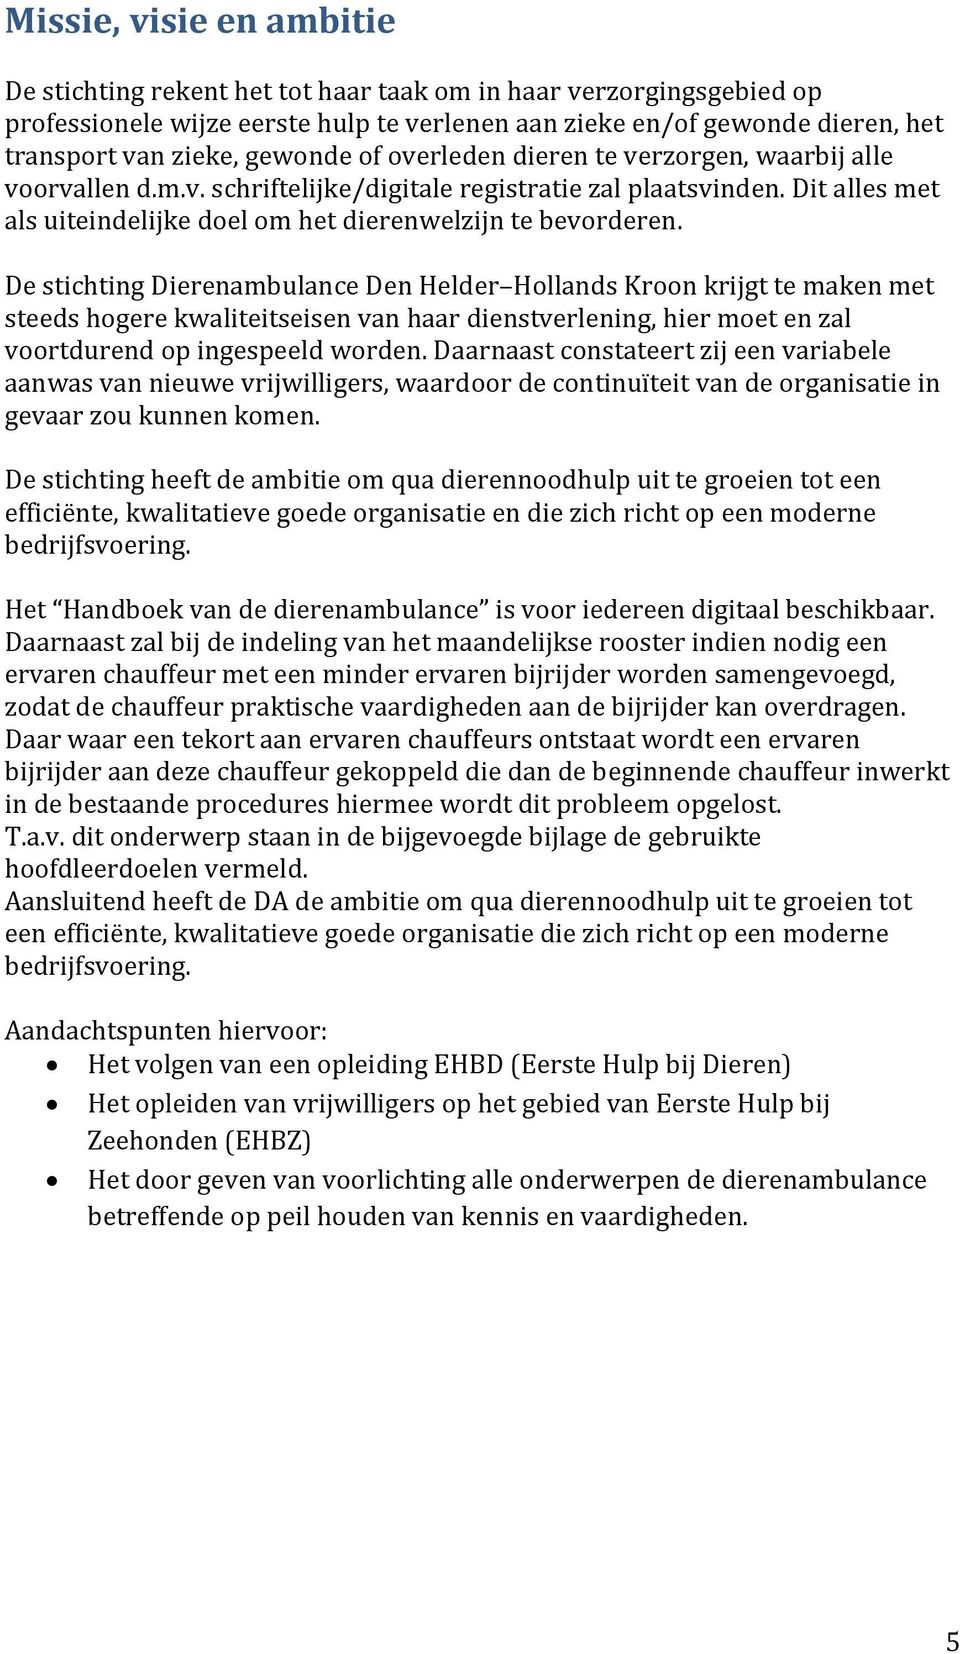 De stichting Dierenambulance Den Helder Hollands Kroon krijgt te maken met steeds hogere kwaliteitseisen van haar dienstverlening, hier moet en zal voortdurend op ingespeeld worden.